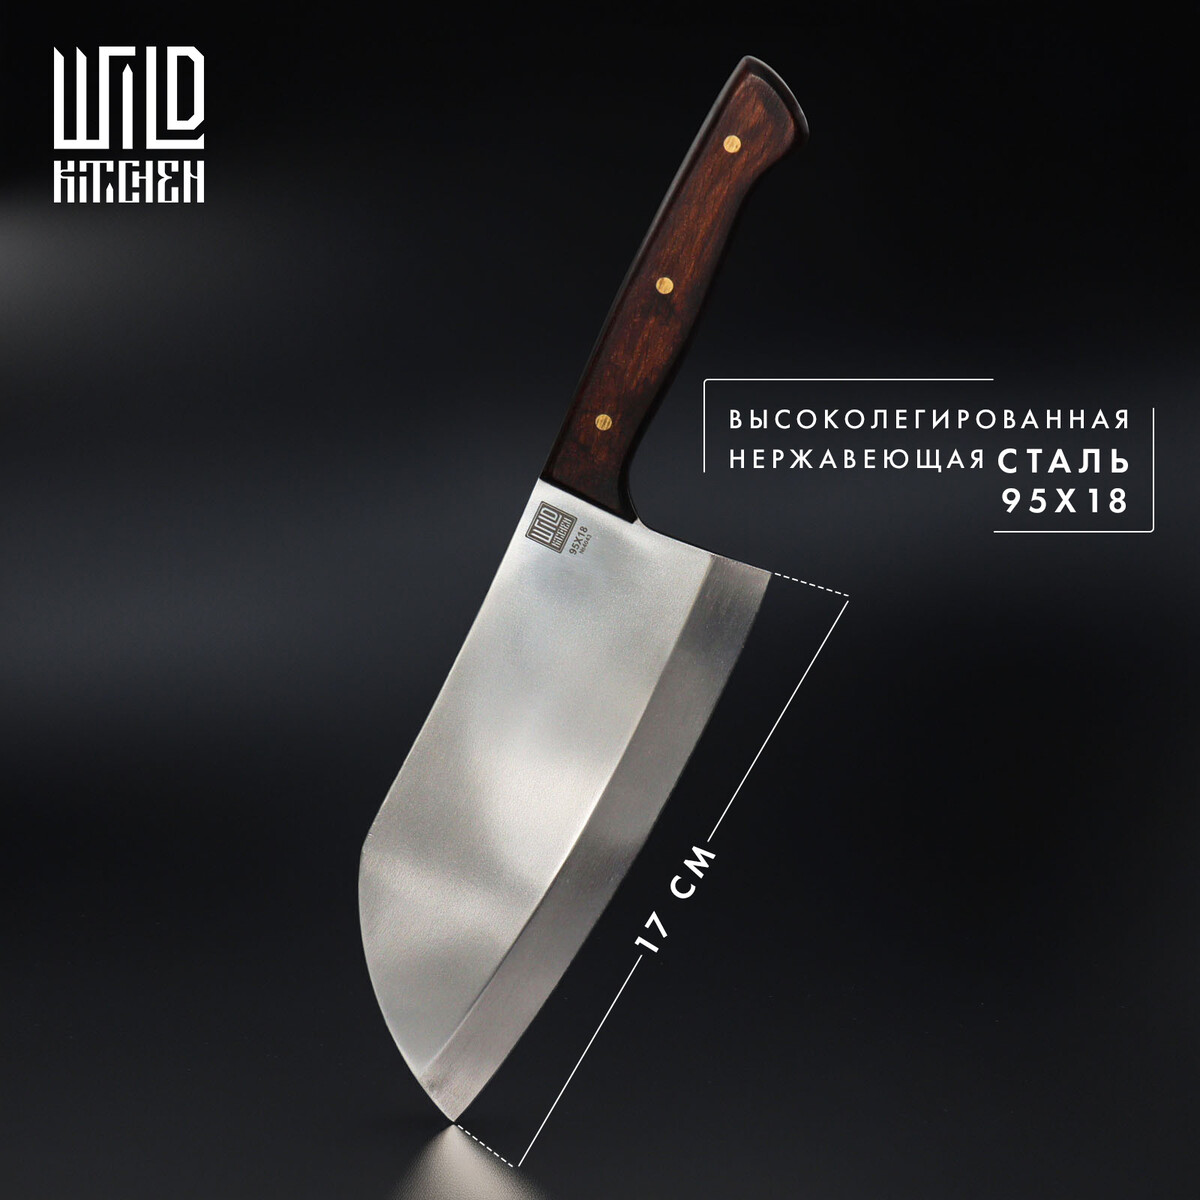 Нож - топорик средний wild kitchen, сталь 95×18, лезвие 17 см нож универсальный складной тундра деревянная рукоятка прямое лезвие нержавеющая сталь